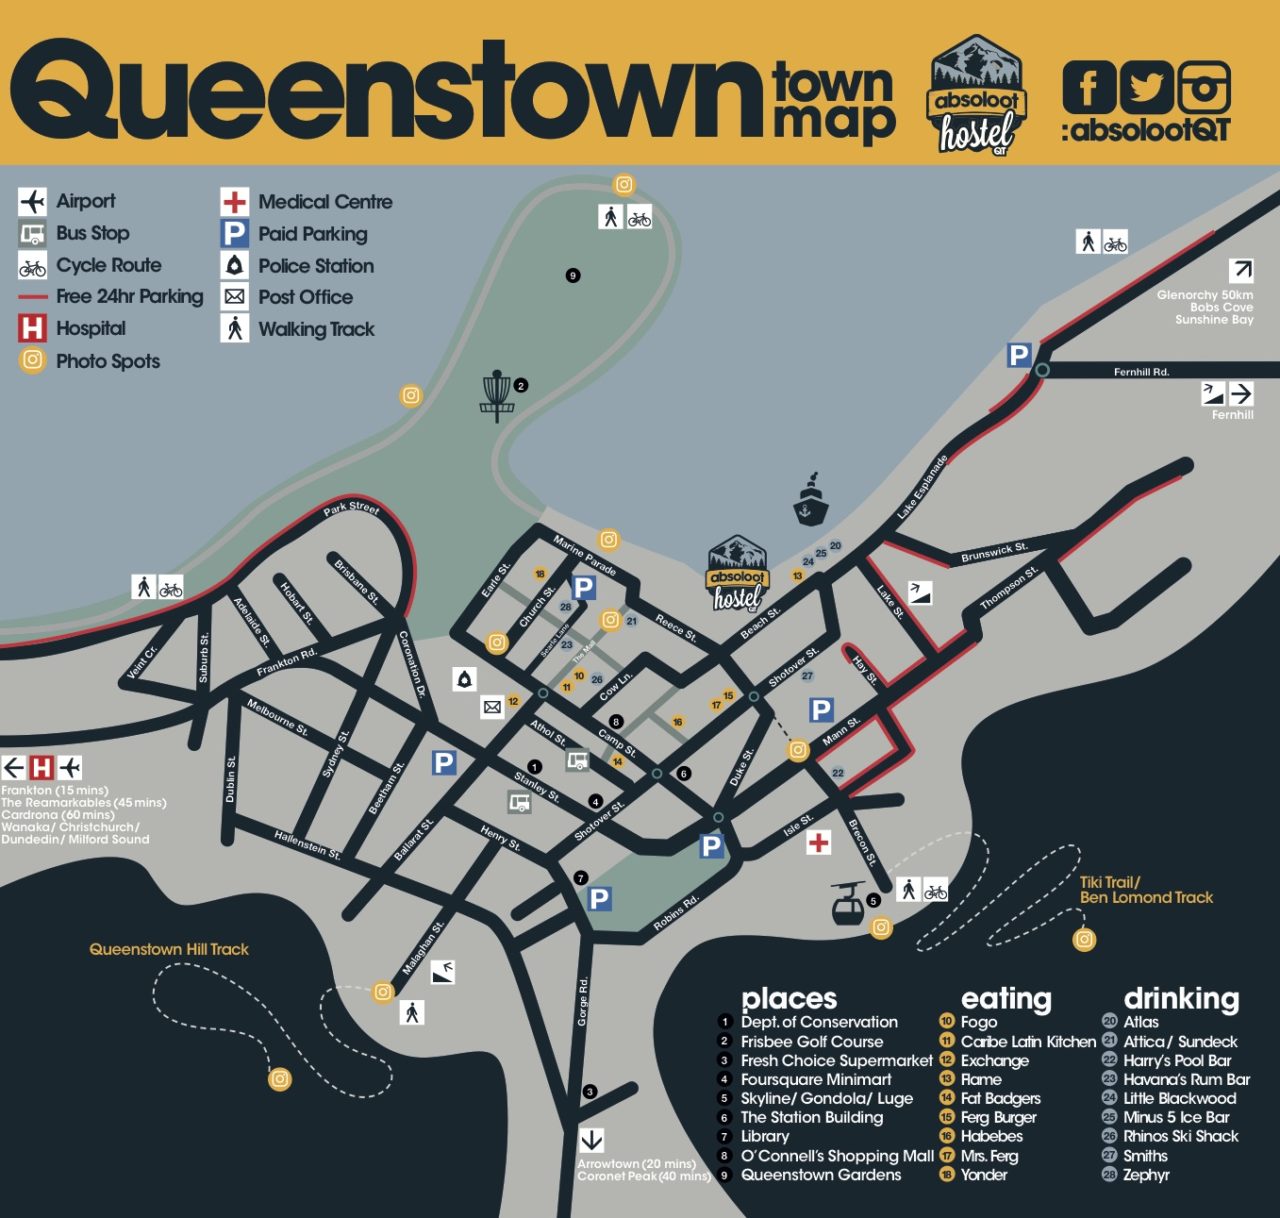 Queenstown Parking Map Absoloot Hostel 1280x1218 